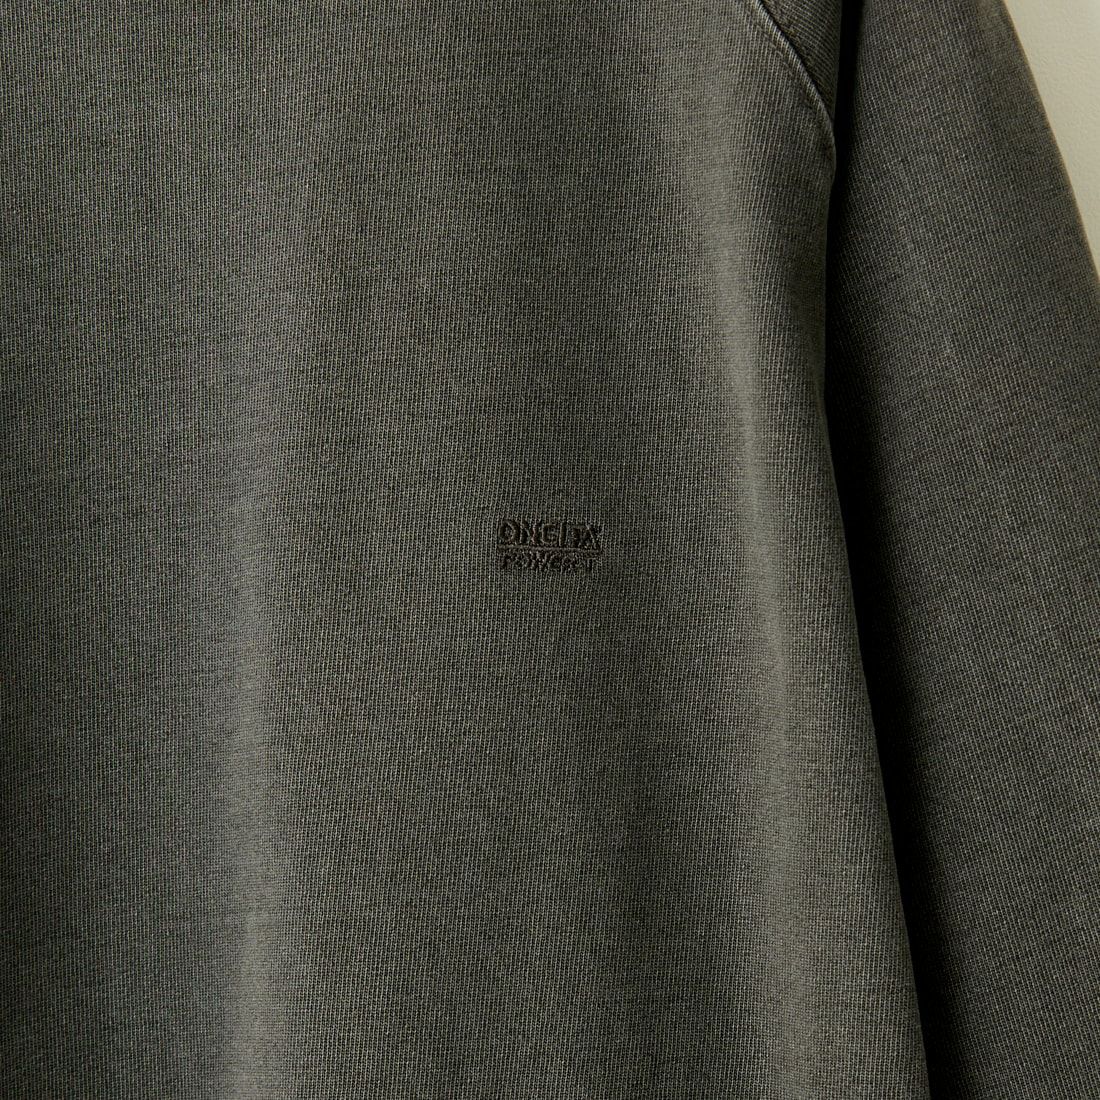 ONEITA [オニータ] POWER-T ワンポイント刺繍ロゴ ピグメントショートスリーブTシャツ [2422-421IN] BLACK